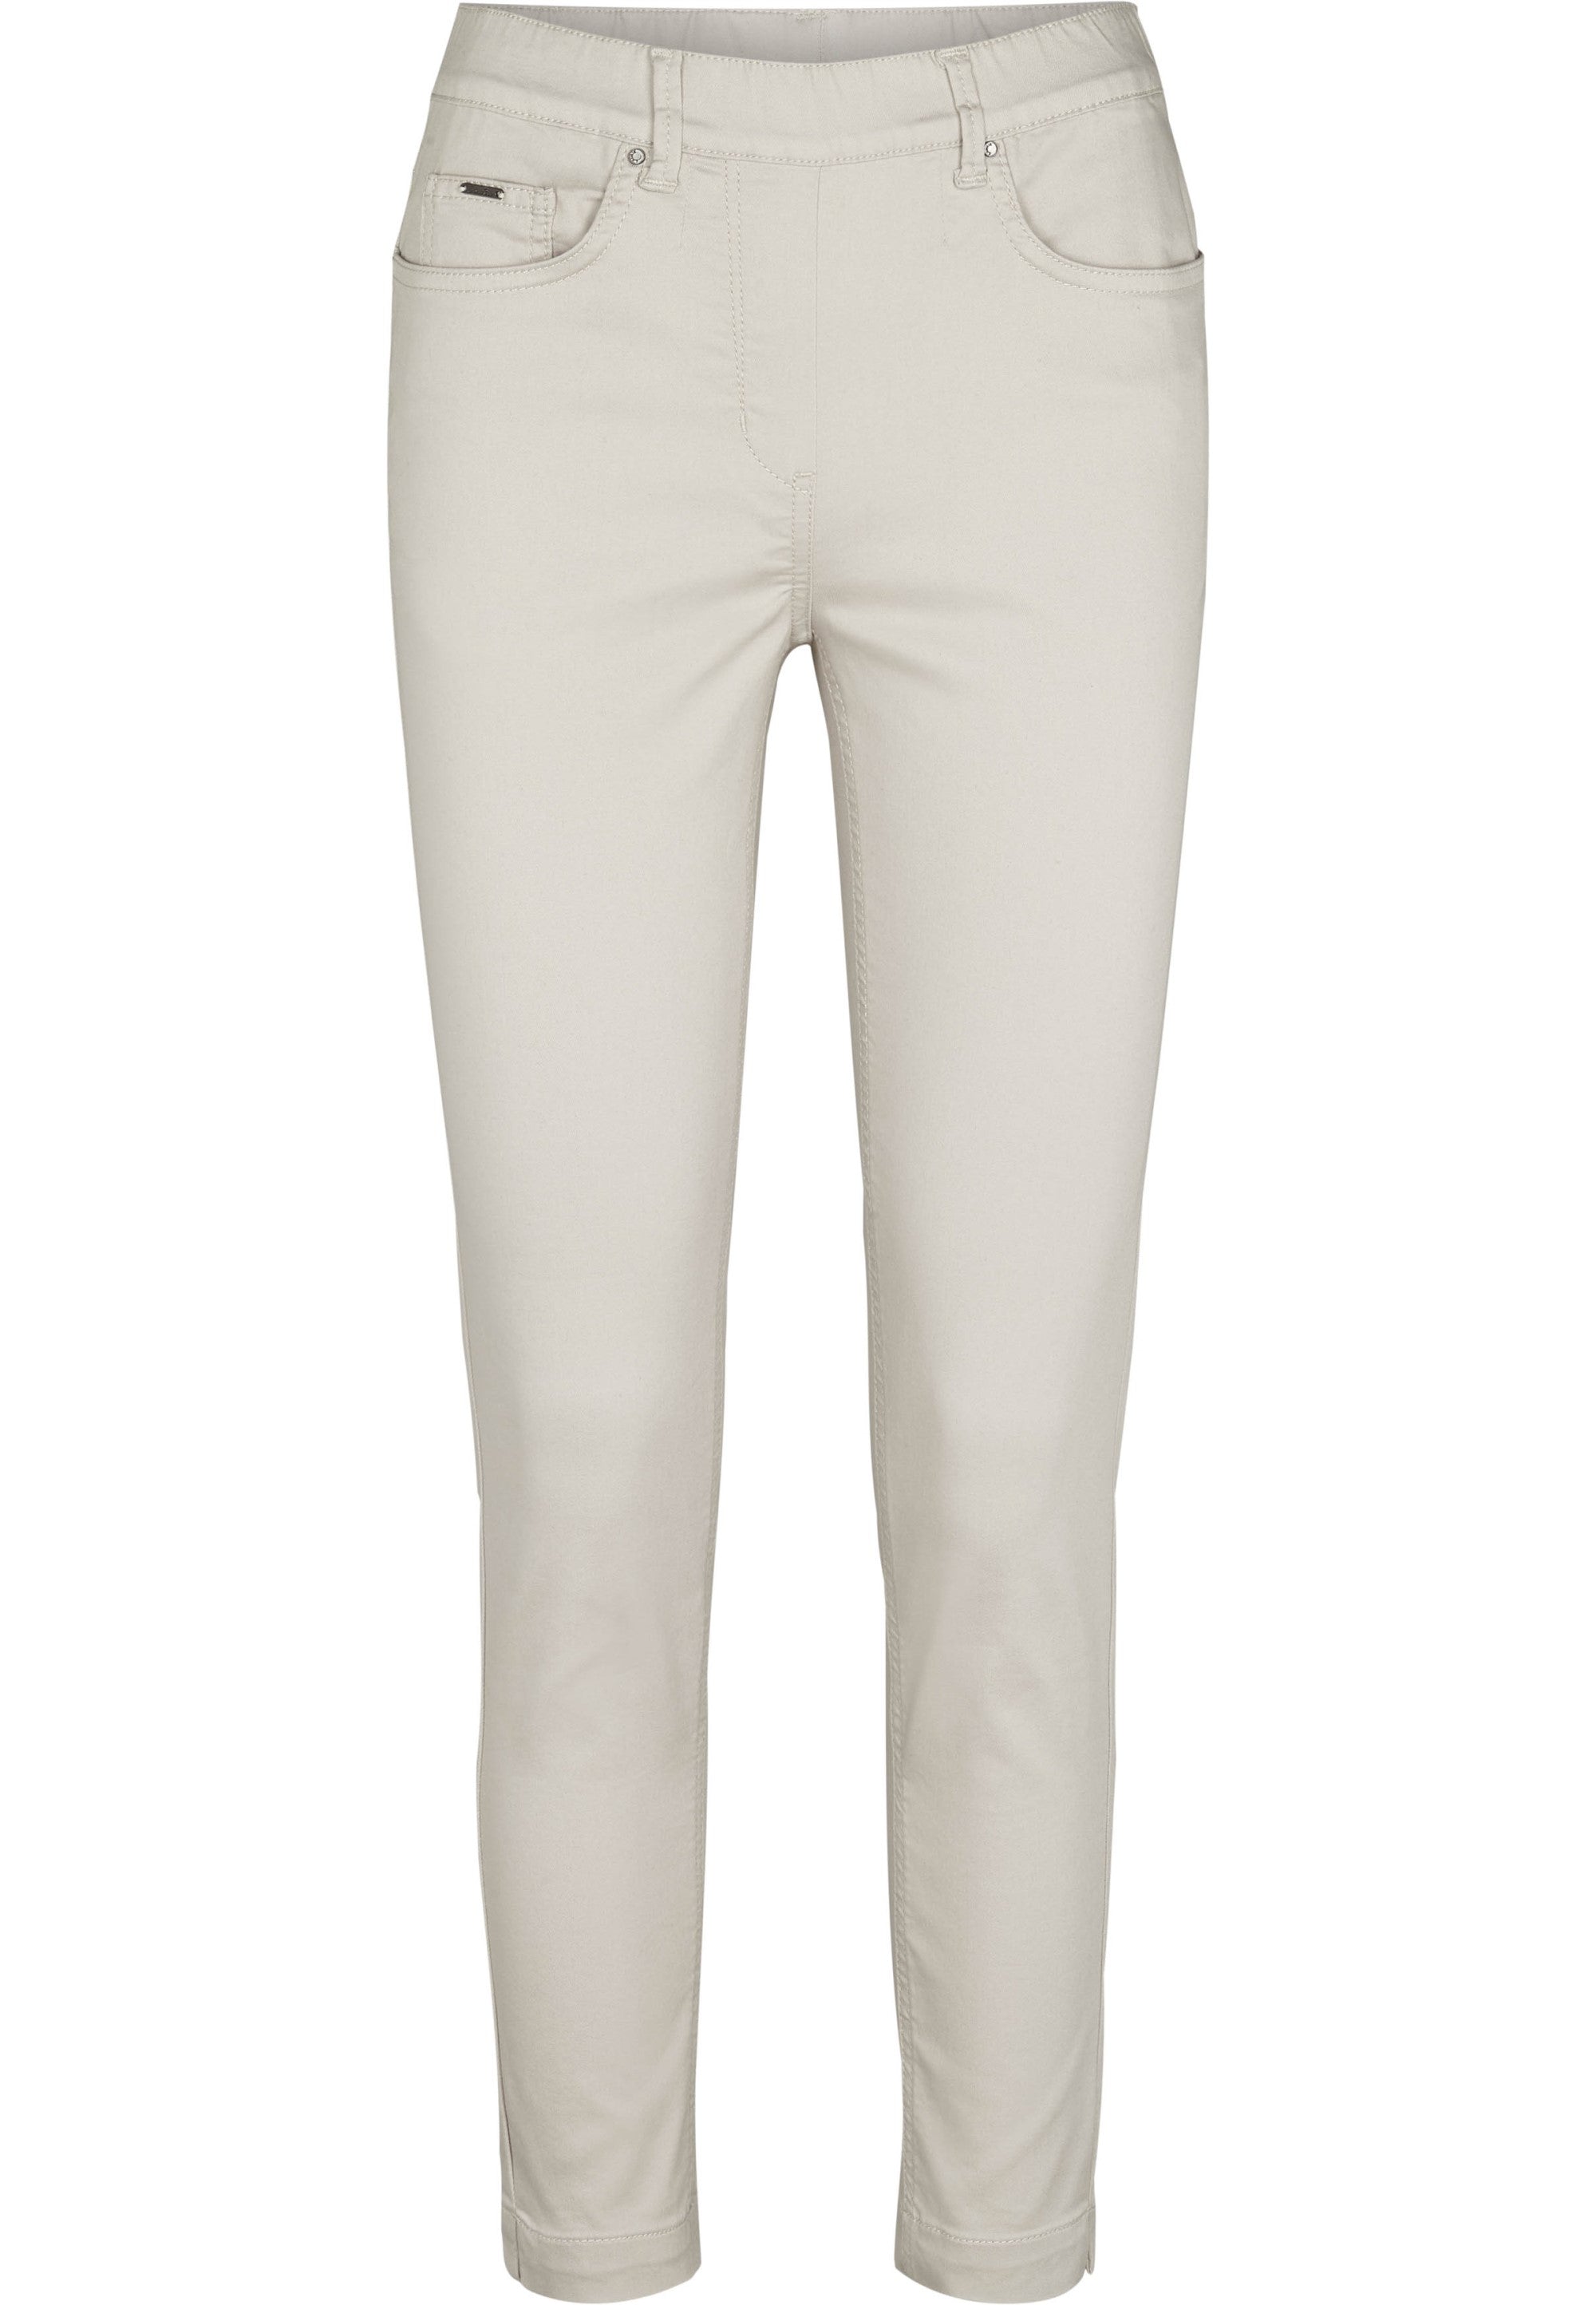 LAURIE  Faith Slim - Extra Short Length Trousers SLIM 25107 Grey Sand